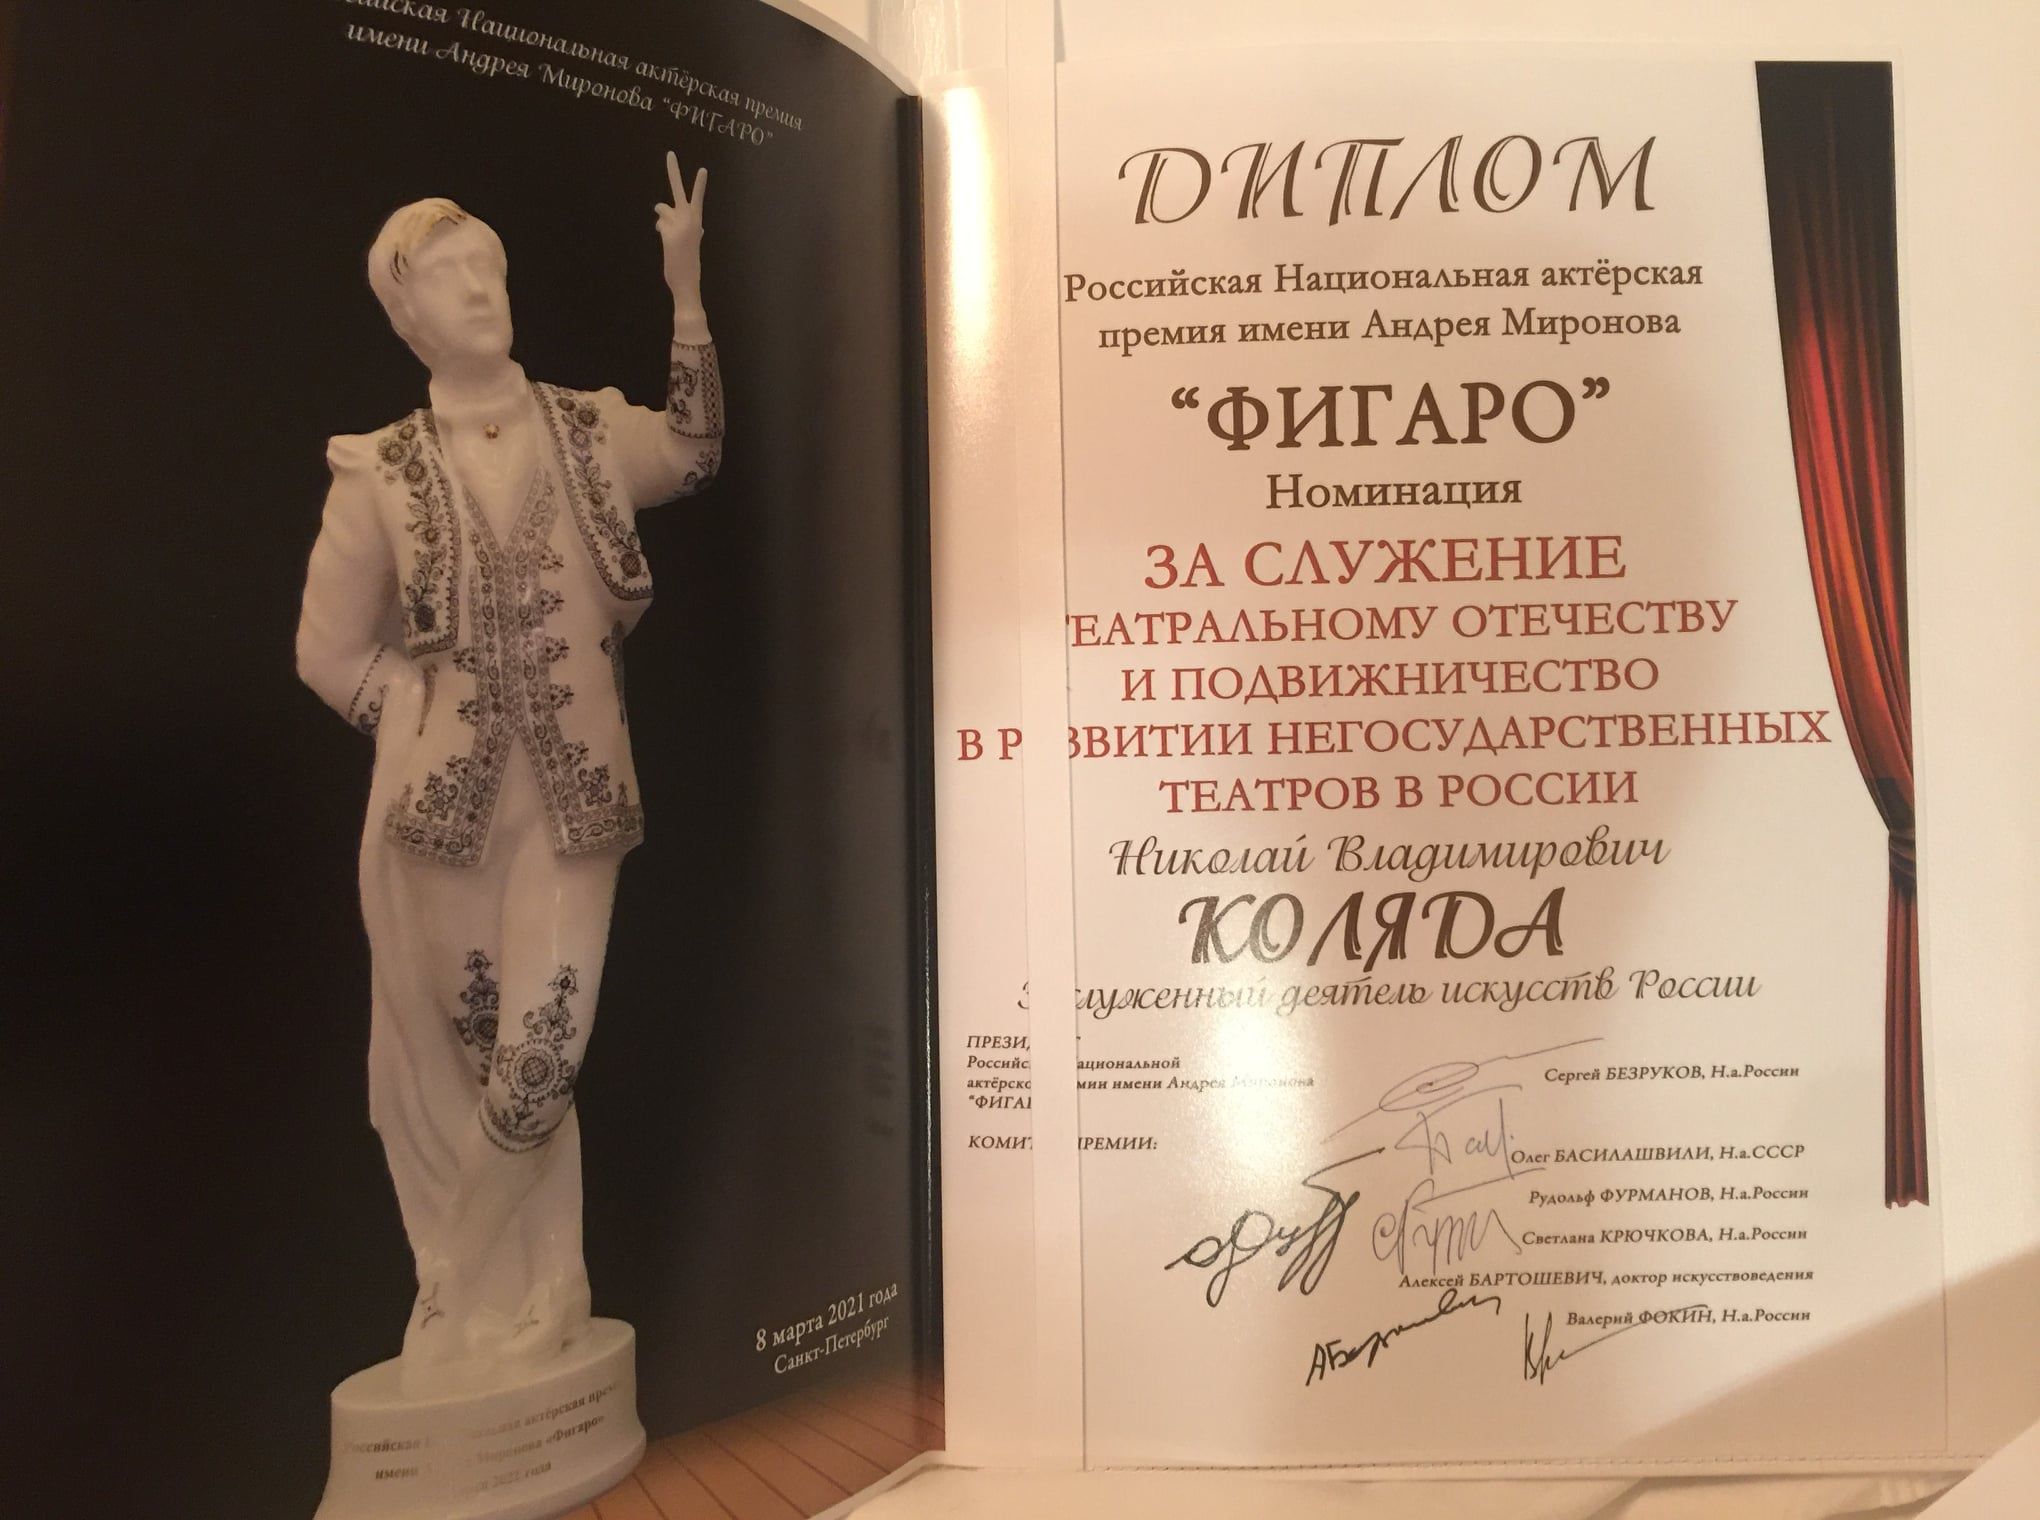 Диплом подписан народным артистом России Сергеем Безруковым, который является президентом премии